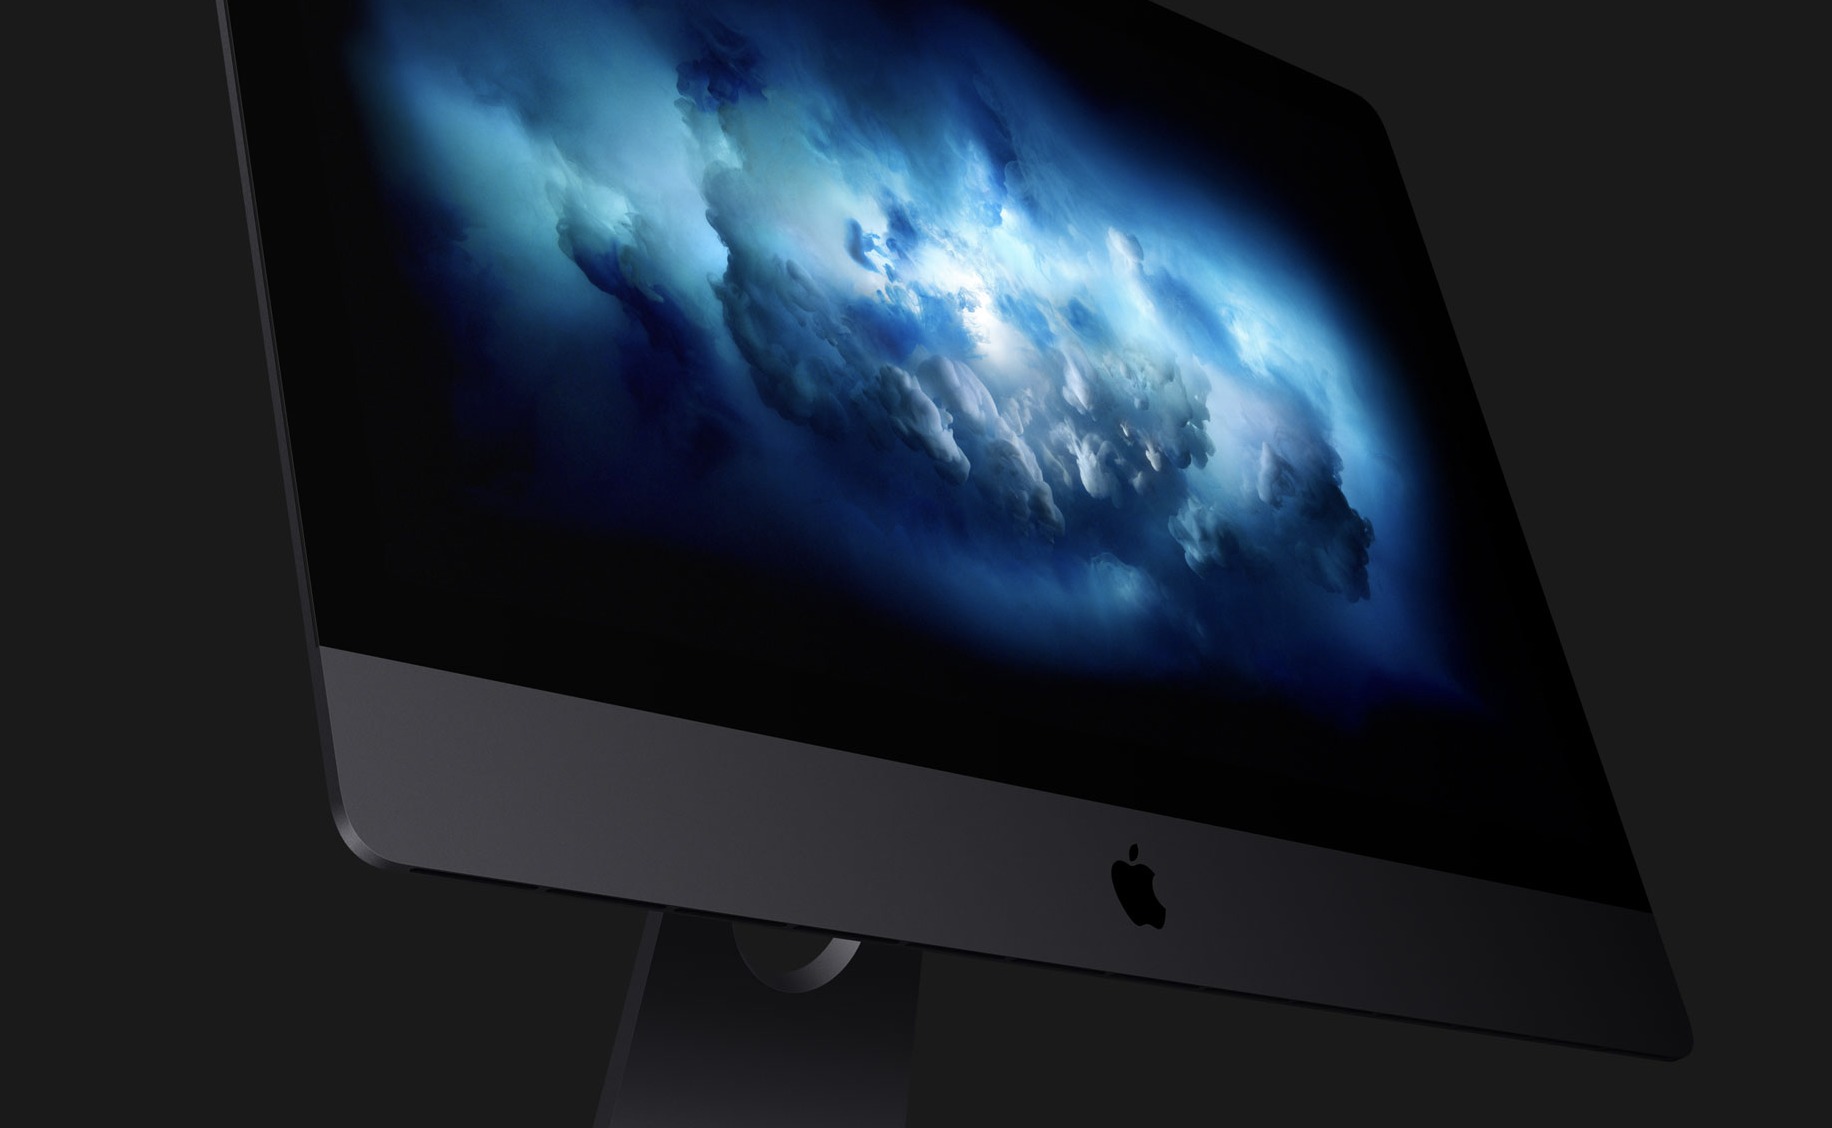 Apples prispåslag for andre modeller i Apple Store er på 80 prosent for enkelte komponenter. Det betyr store penger for iMac Pro.